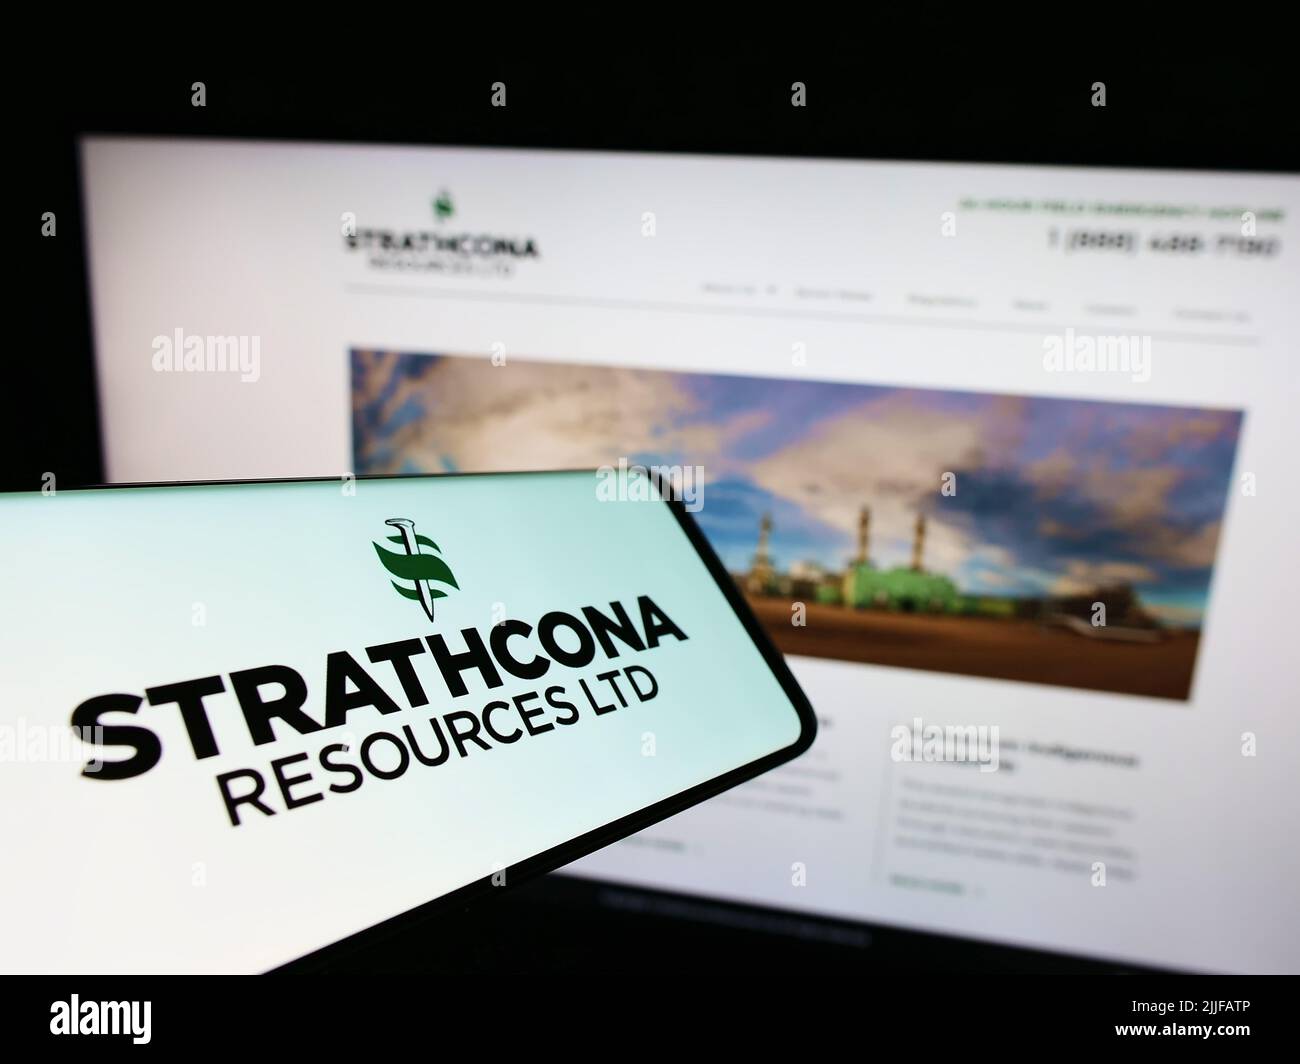 Cellulare con logo della compagnia petrolifera canadese Strathcona Resources Ltd. Sullo schermo di fronte al sito web. Concentratevi sul centro-destra del display del telefono. Foto Stock